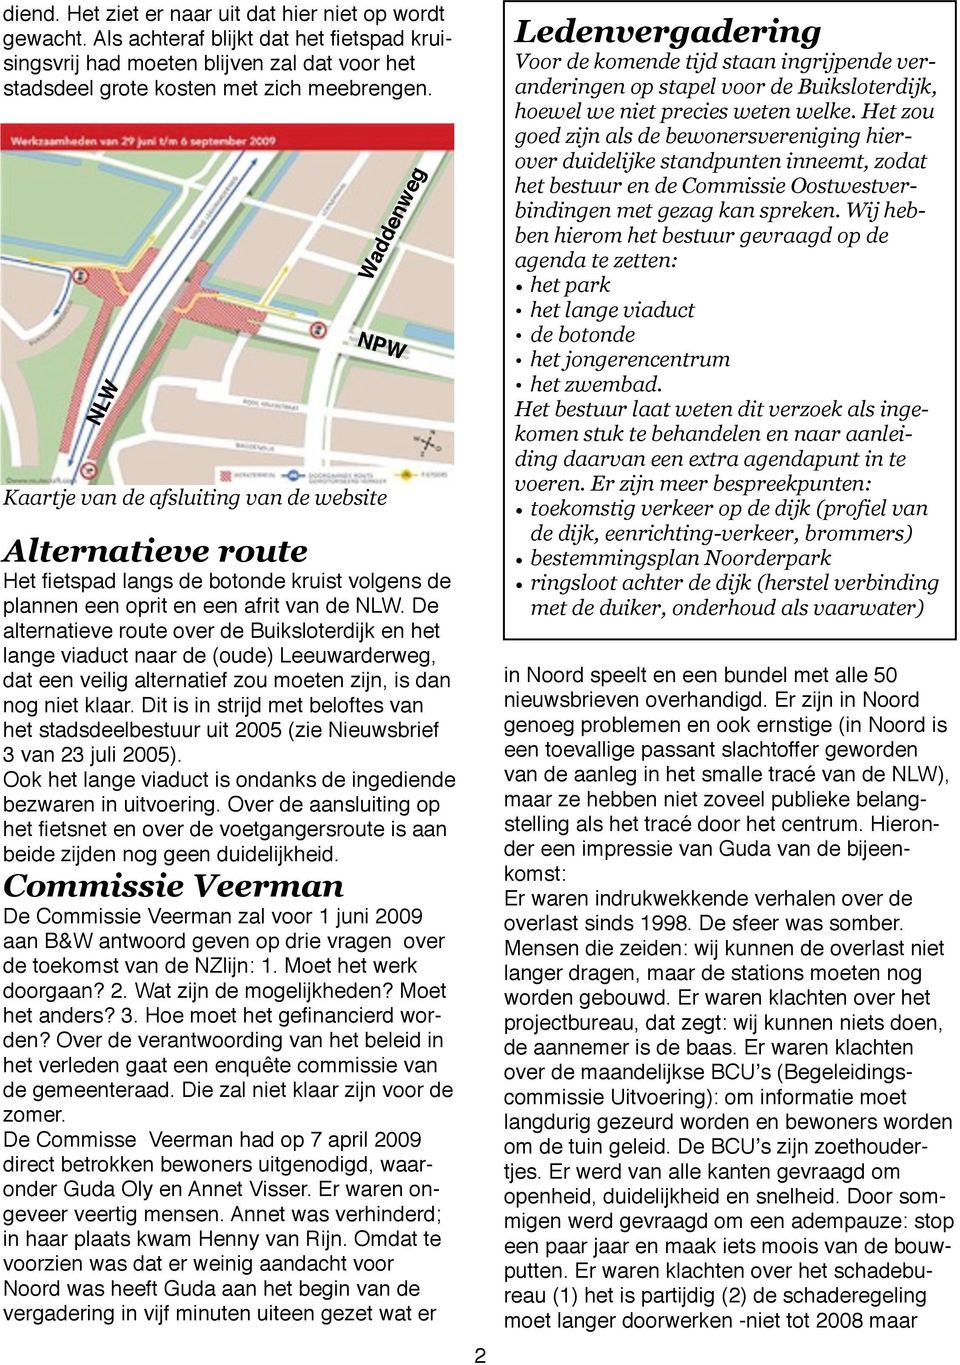 De alternatieve route over de Buiksloterdijk en het lange viaduct naar de (oude) Leeuwarderweg, dat een veilig alternatief zou moeten zijn, is dan nog niet klaar.